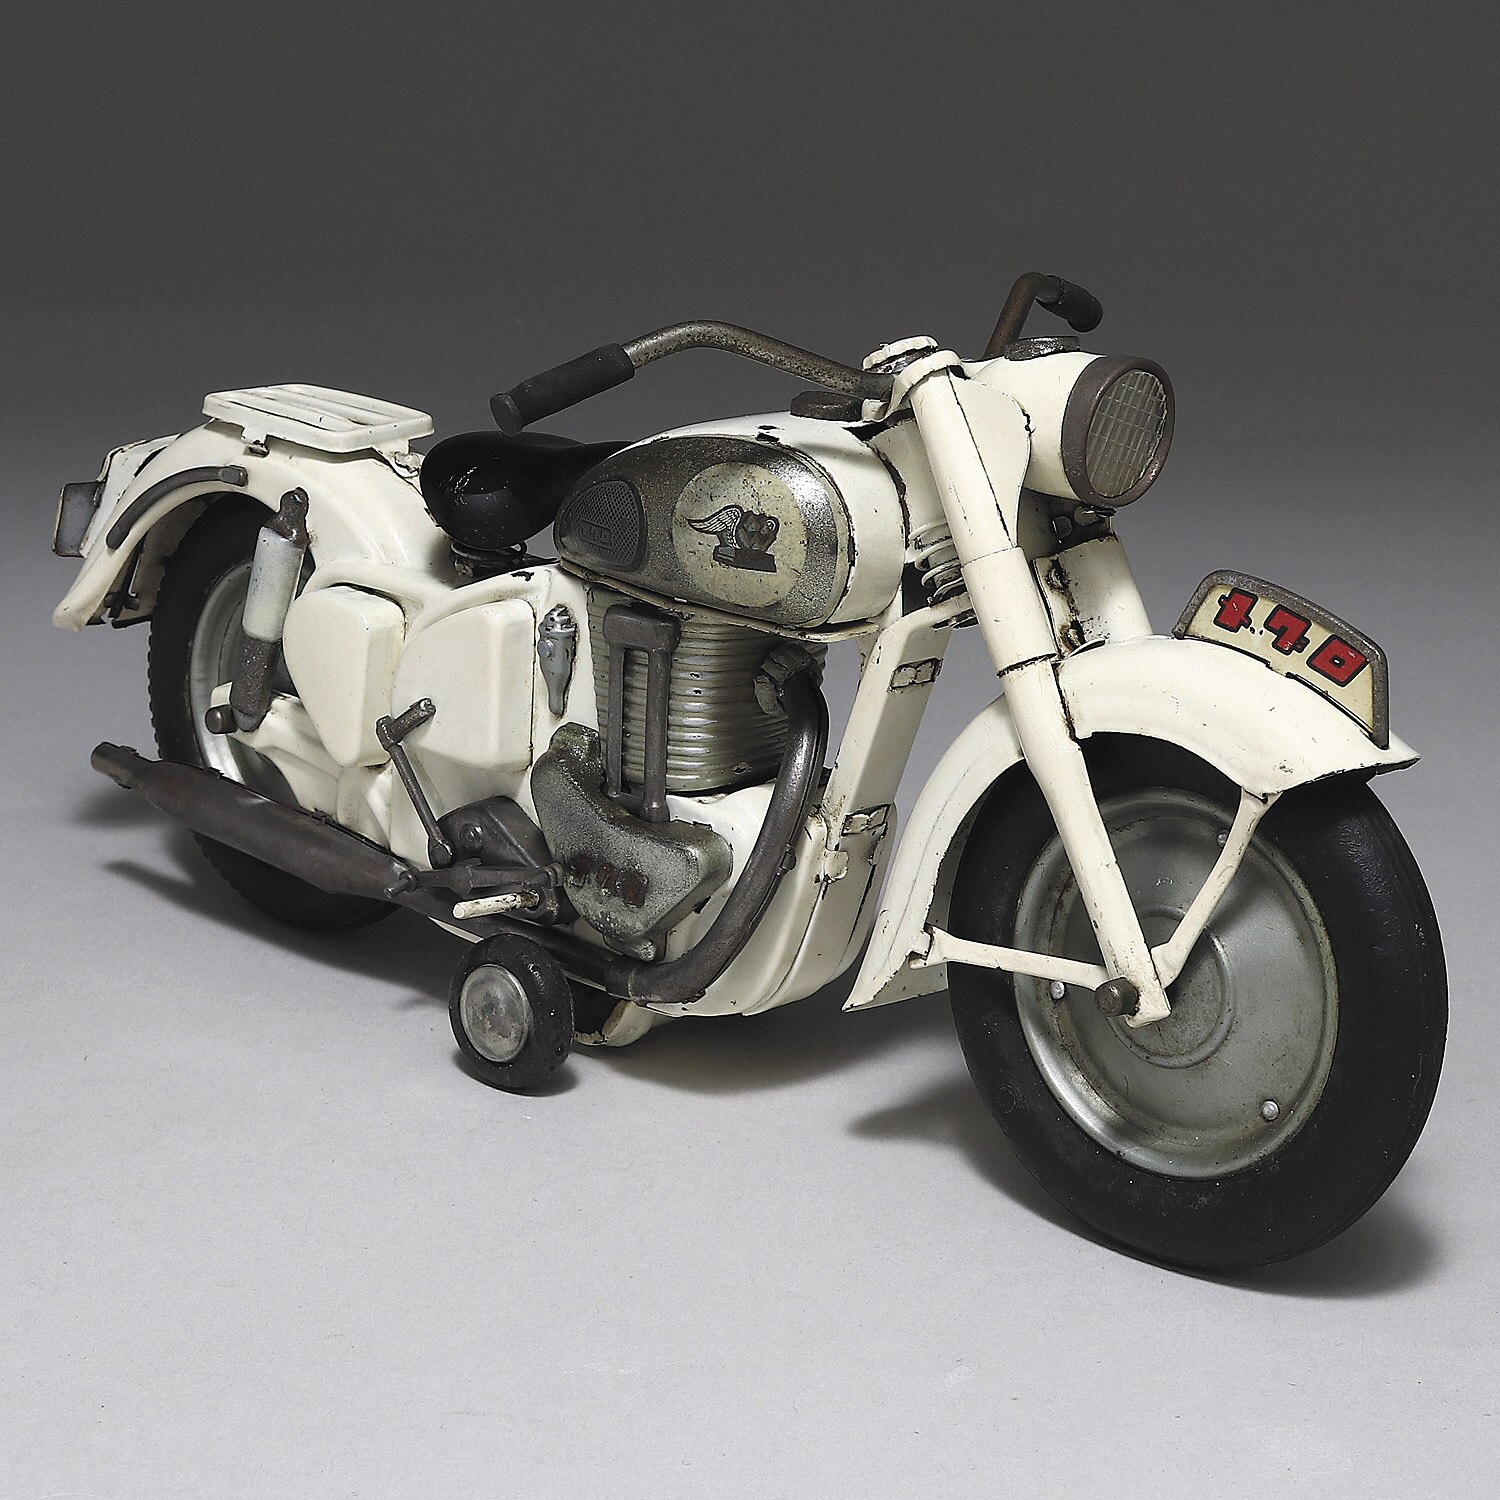 バンダイ メグロ オートバイ 500cc スタミナ ホワイト